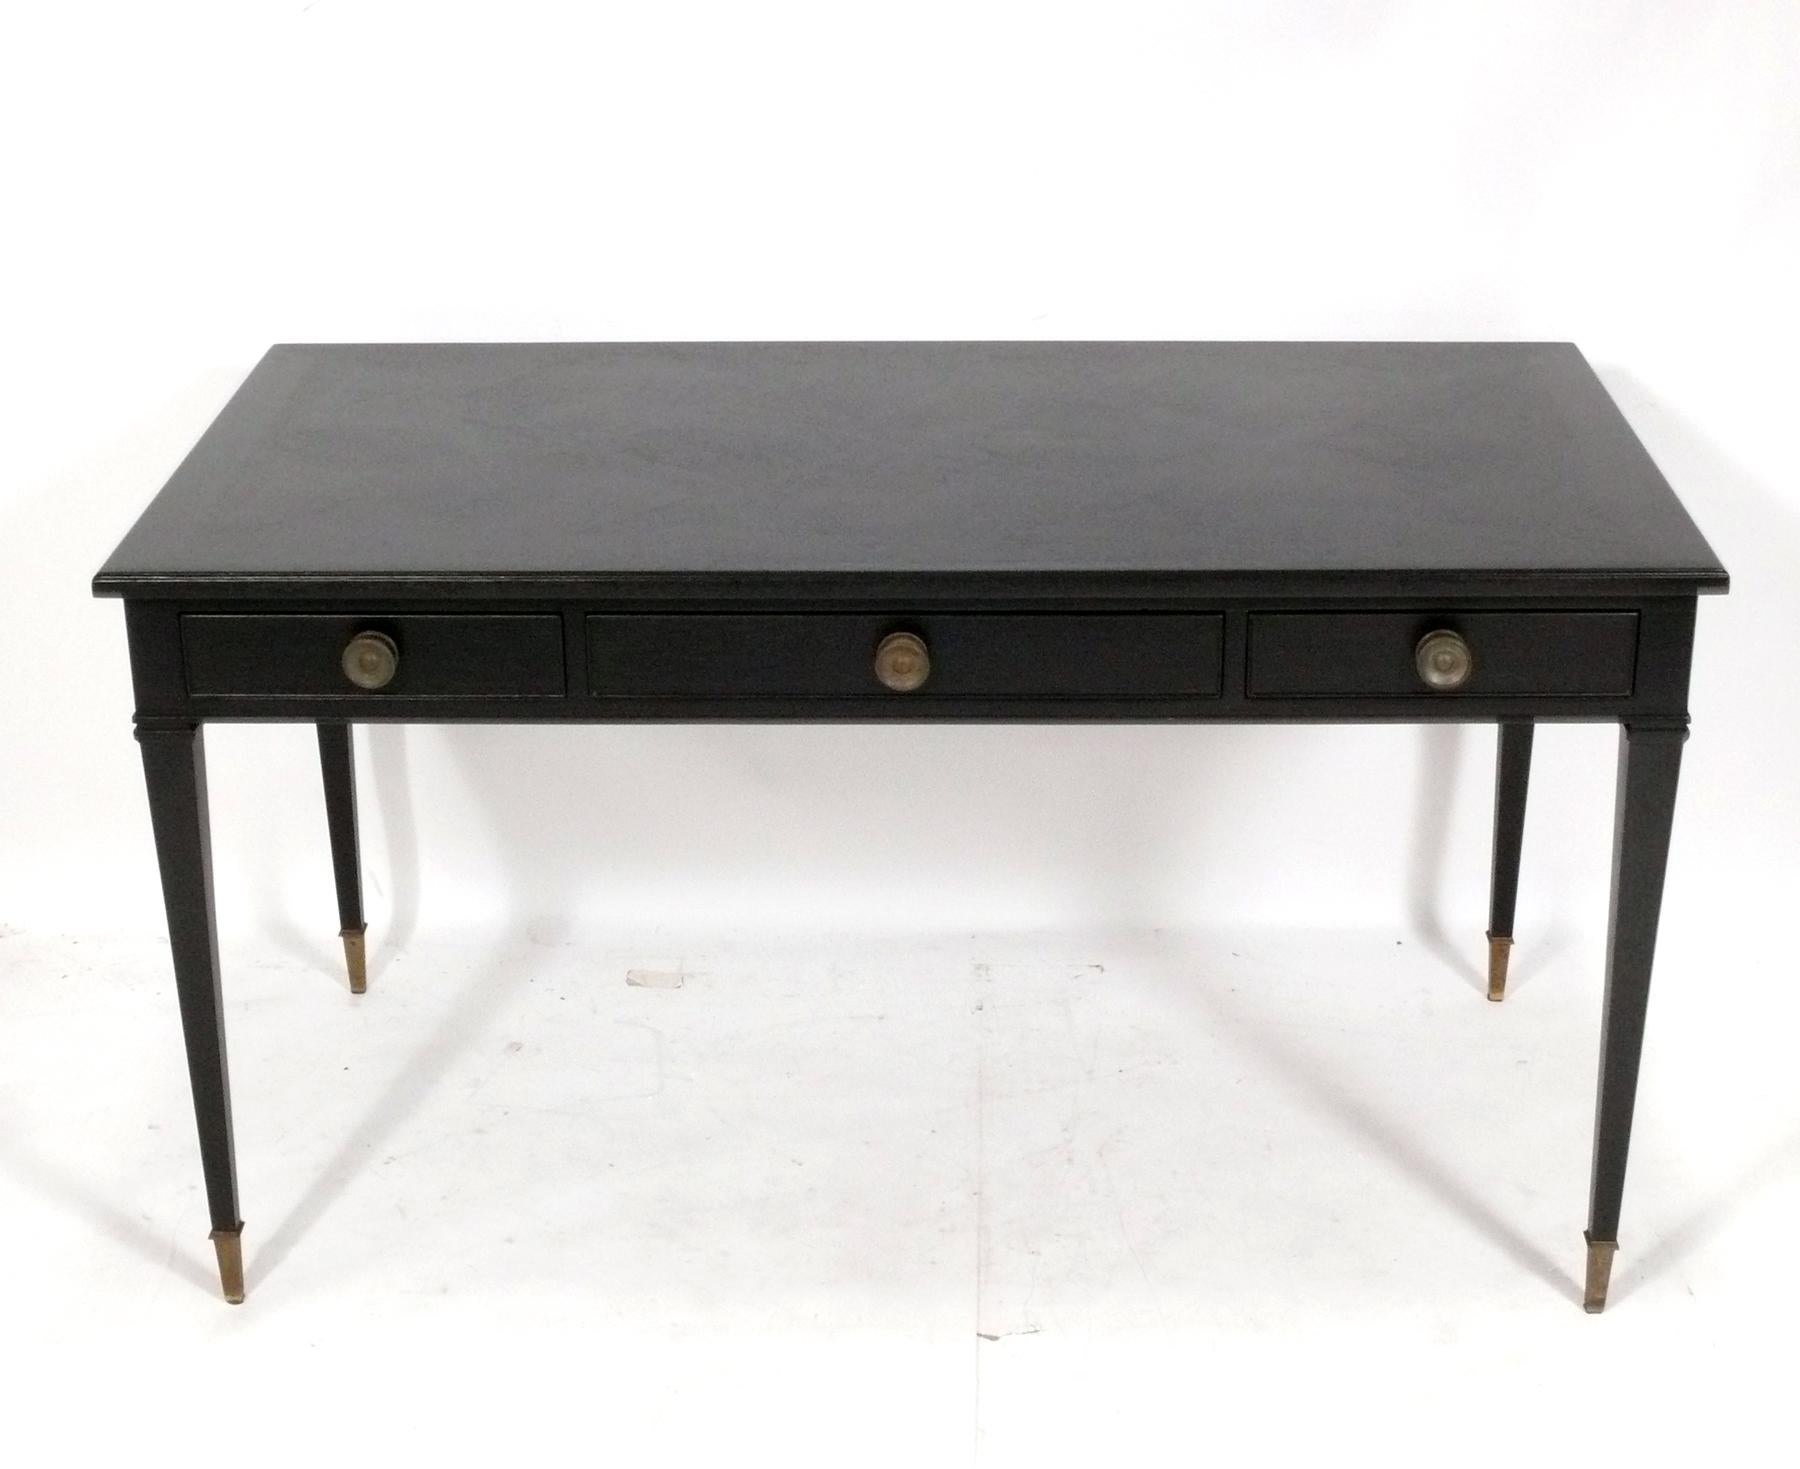 Elegantes schwarz gebeiztes Bureau Plat oder Schreibtisch im französischen Stil von Kittinger, amerikanisch, ca. 1960er Jahre. Es wurde vor kurzem in einer schwarzen Beize neu lackiert, so dass man die schöne Parkettdecke noch sehen kann. Die